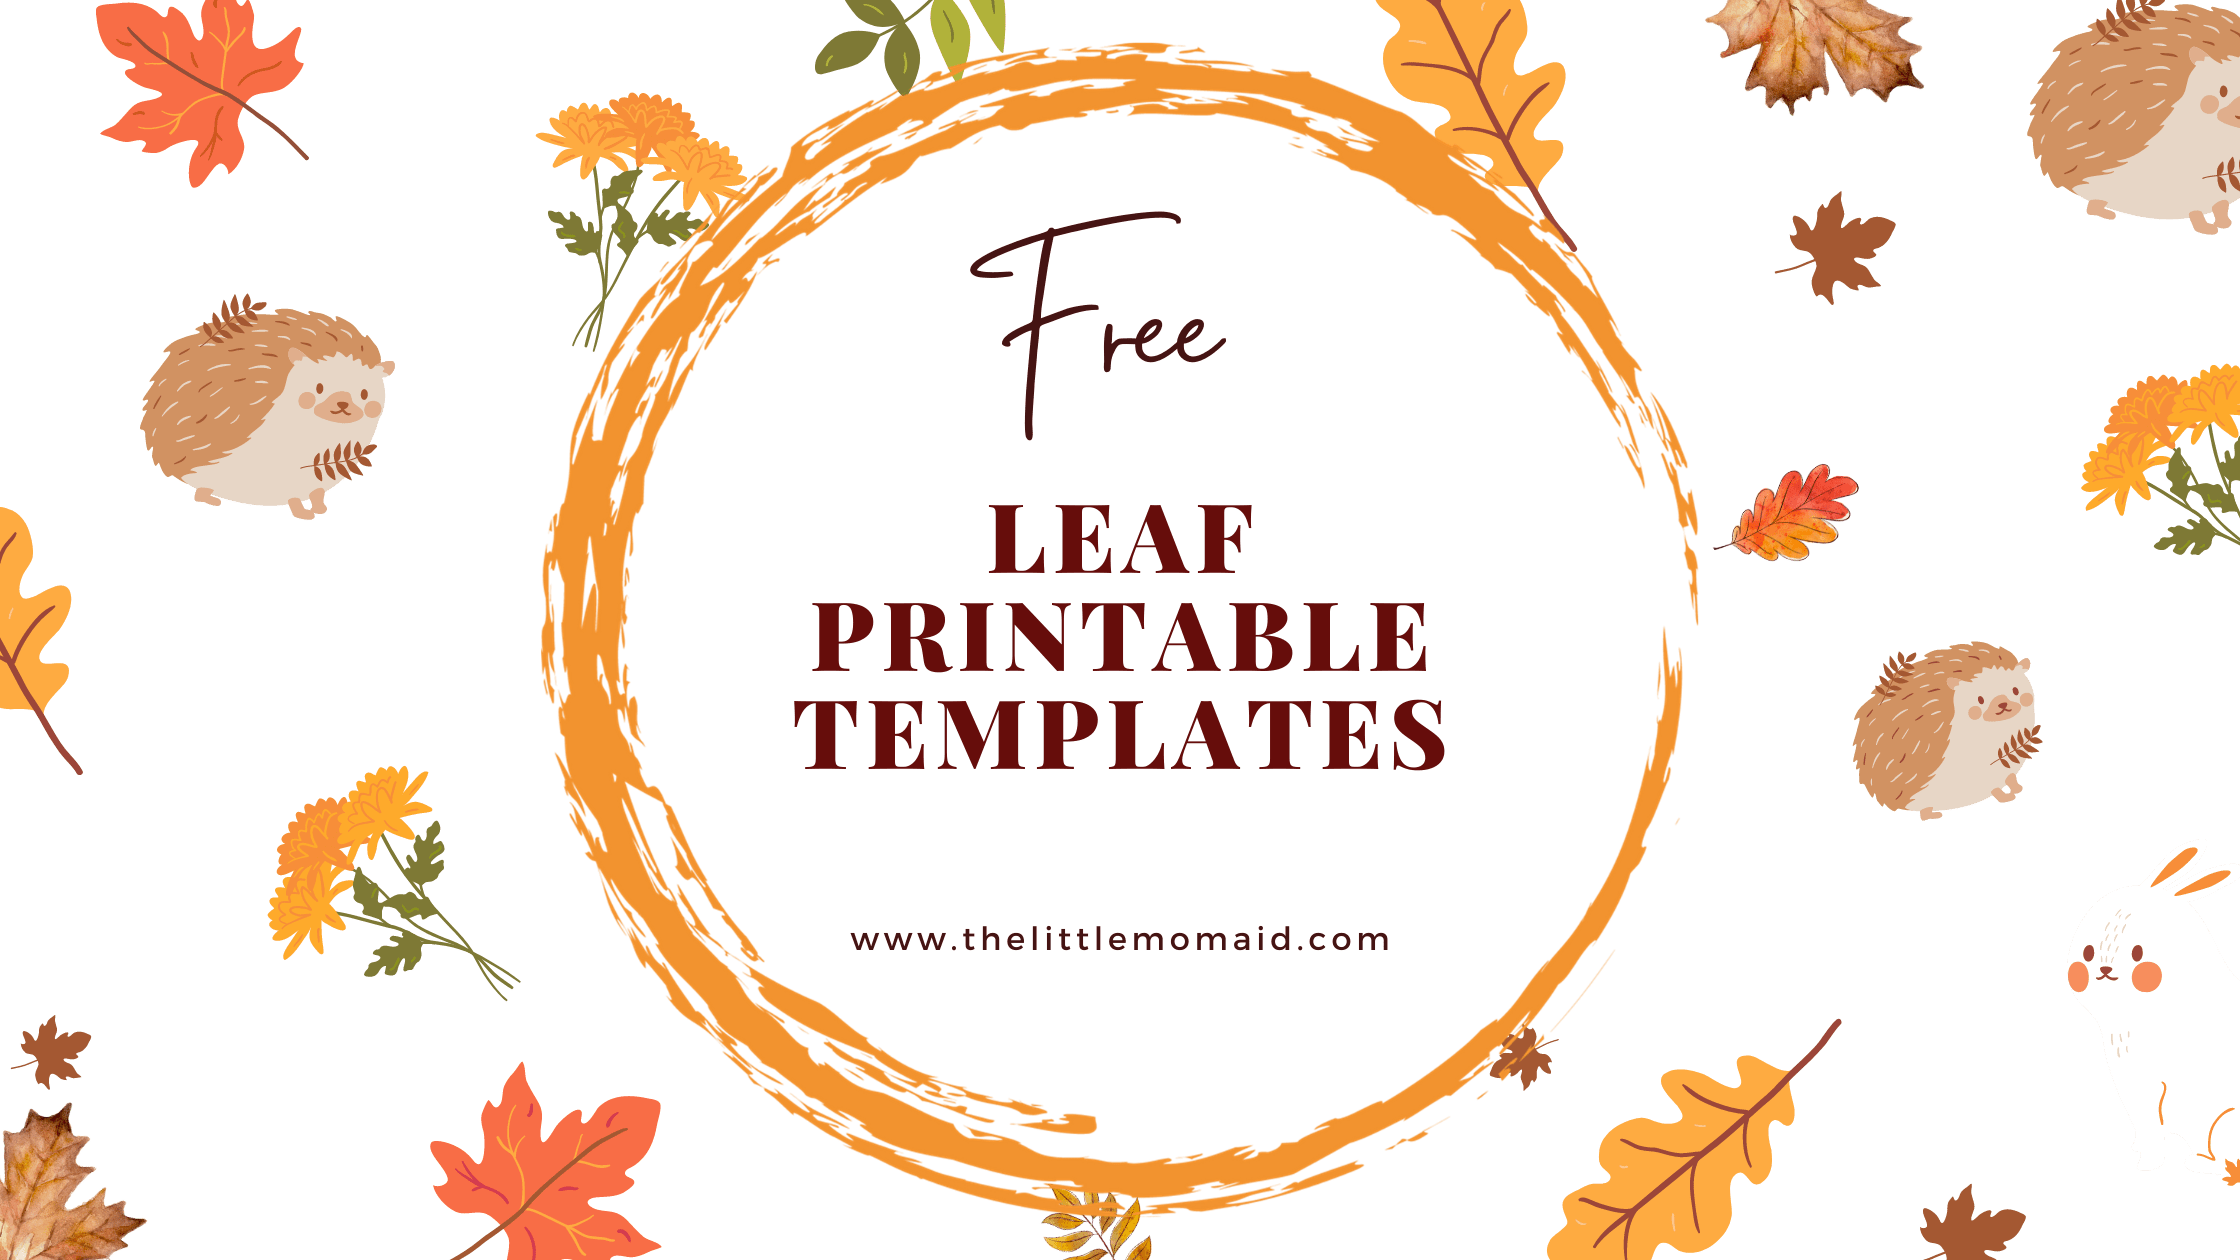 Free leaf printable templates